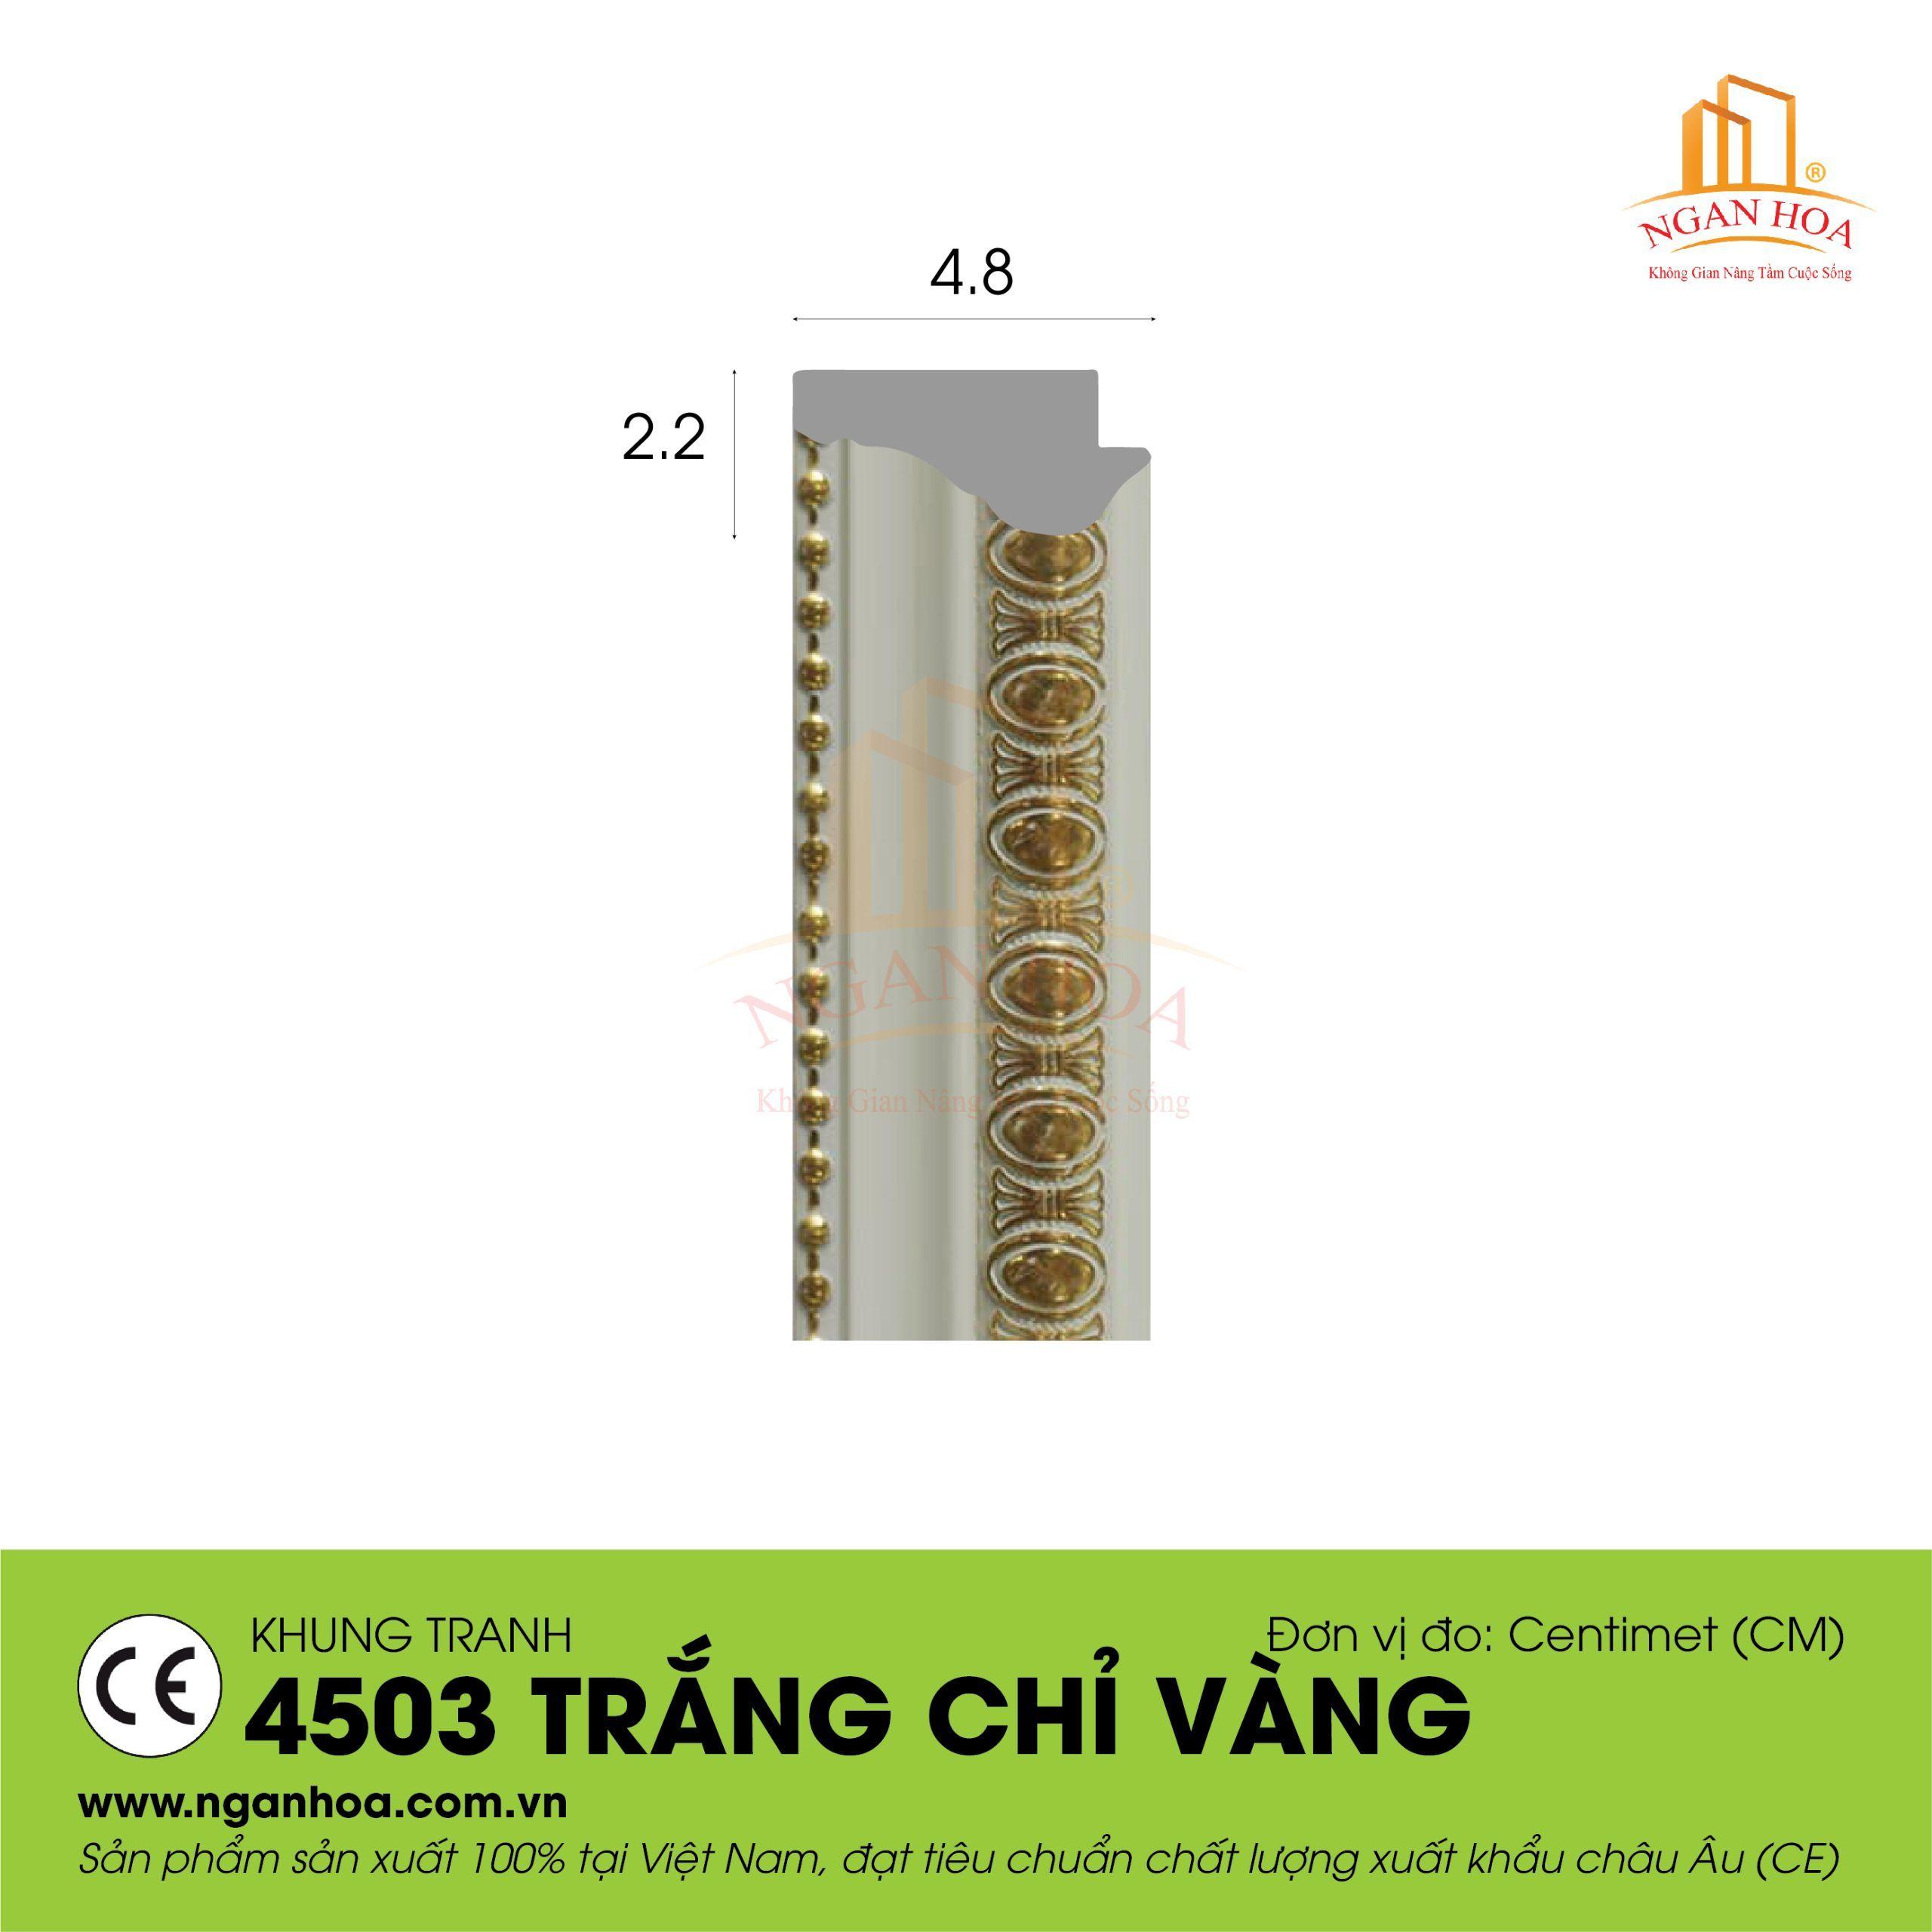 KT 4503 Trang chi vang scaled